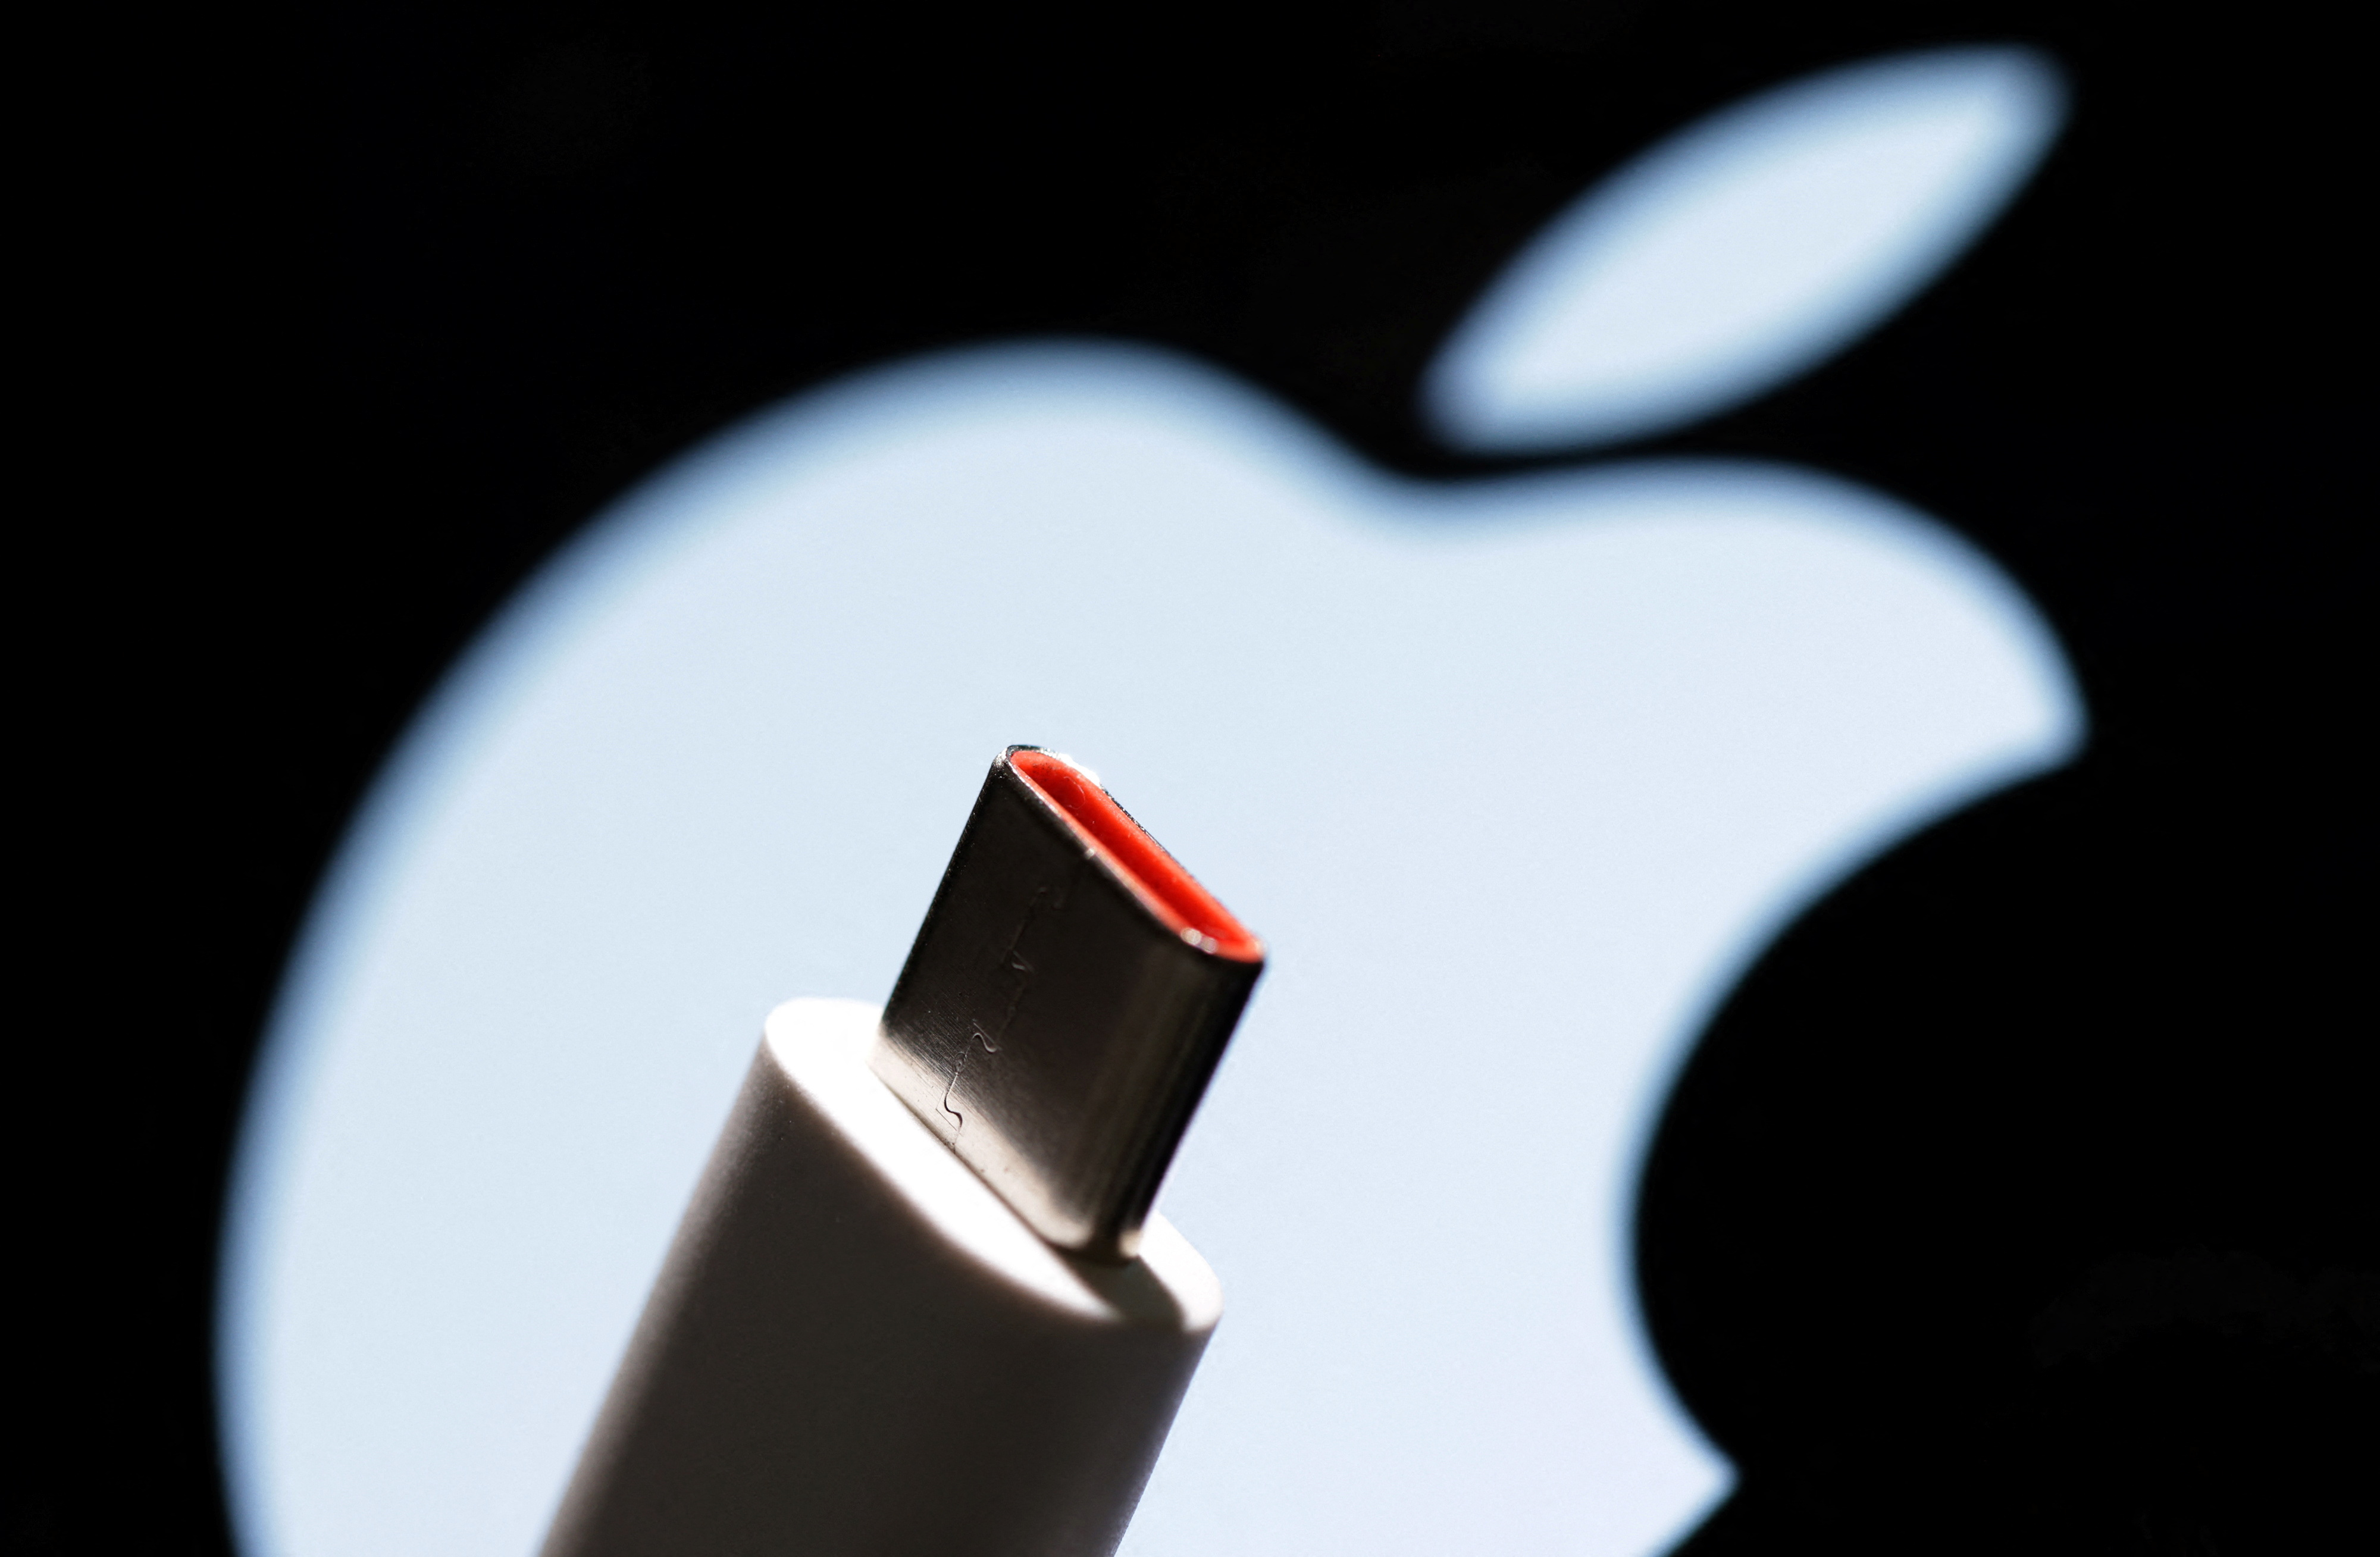  Lista de productos Apple que tendrán nueva conexión para su carga